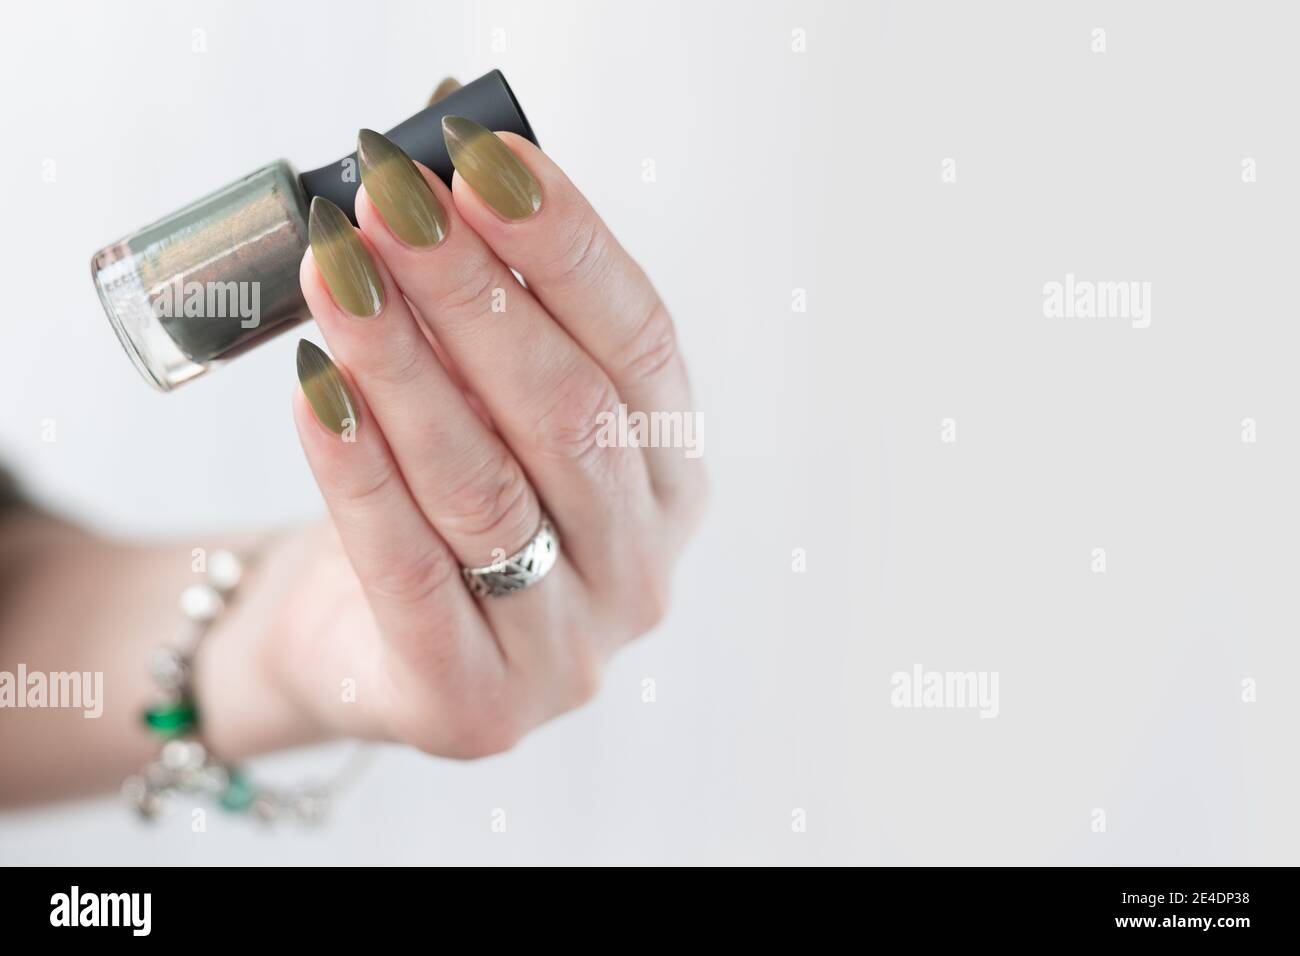 Mano de mujer con uñas largas y manicura verde claro y oscuro con botellas de esmalte de uñas. Foto de stock